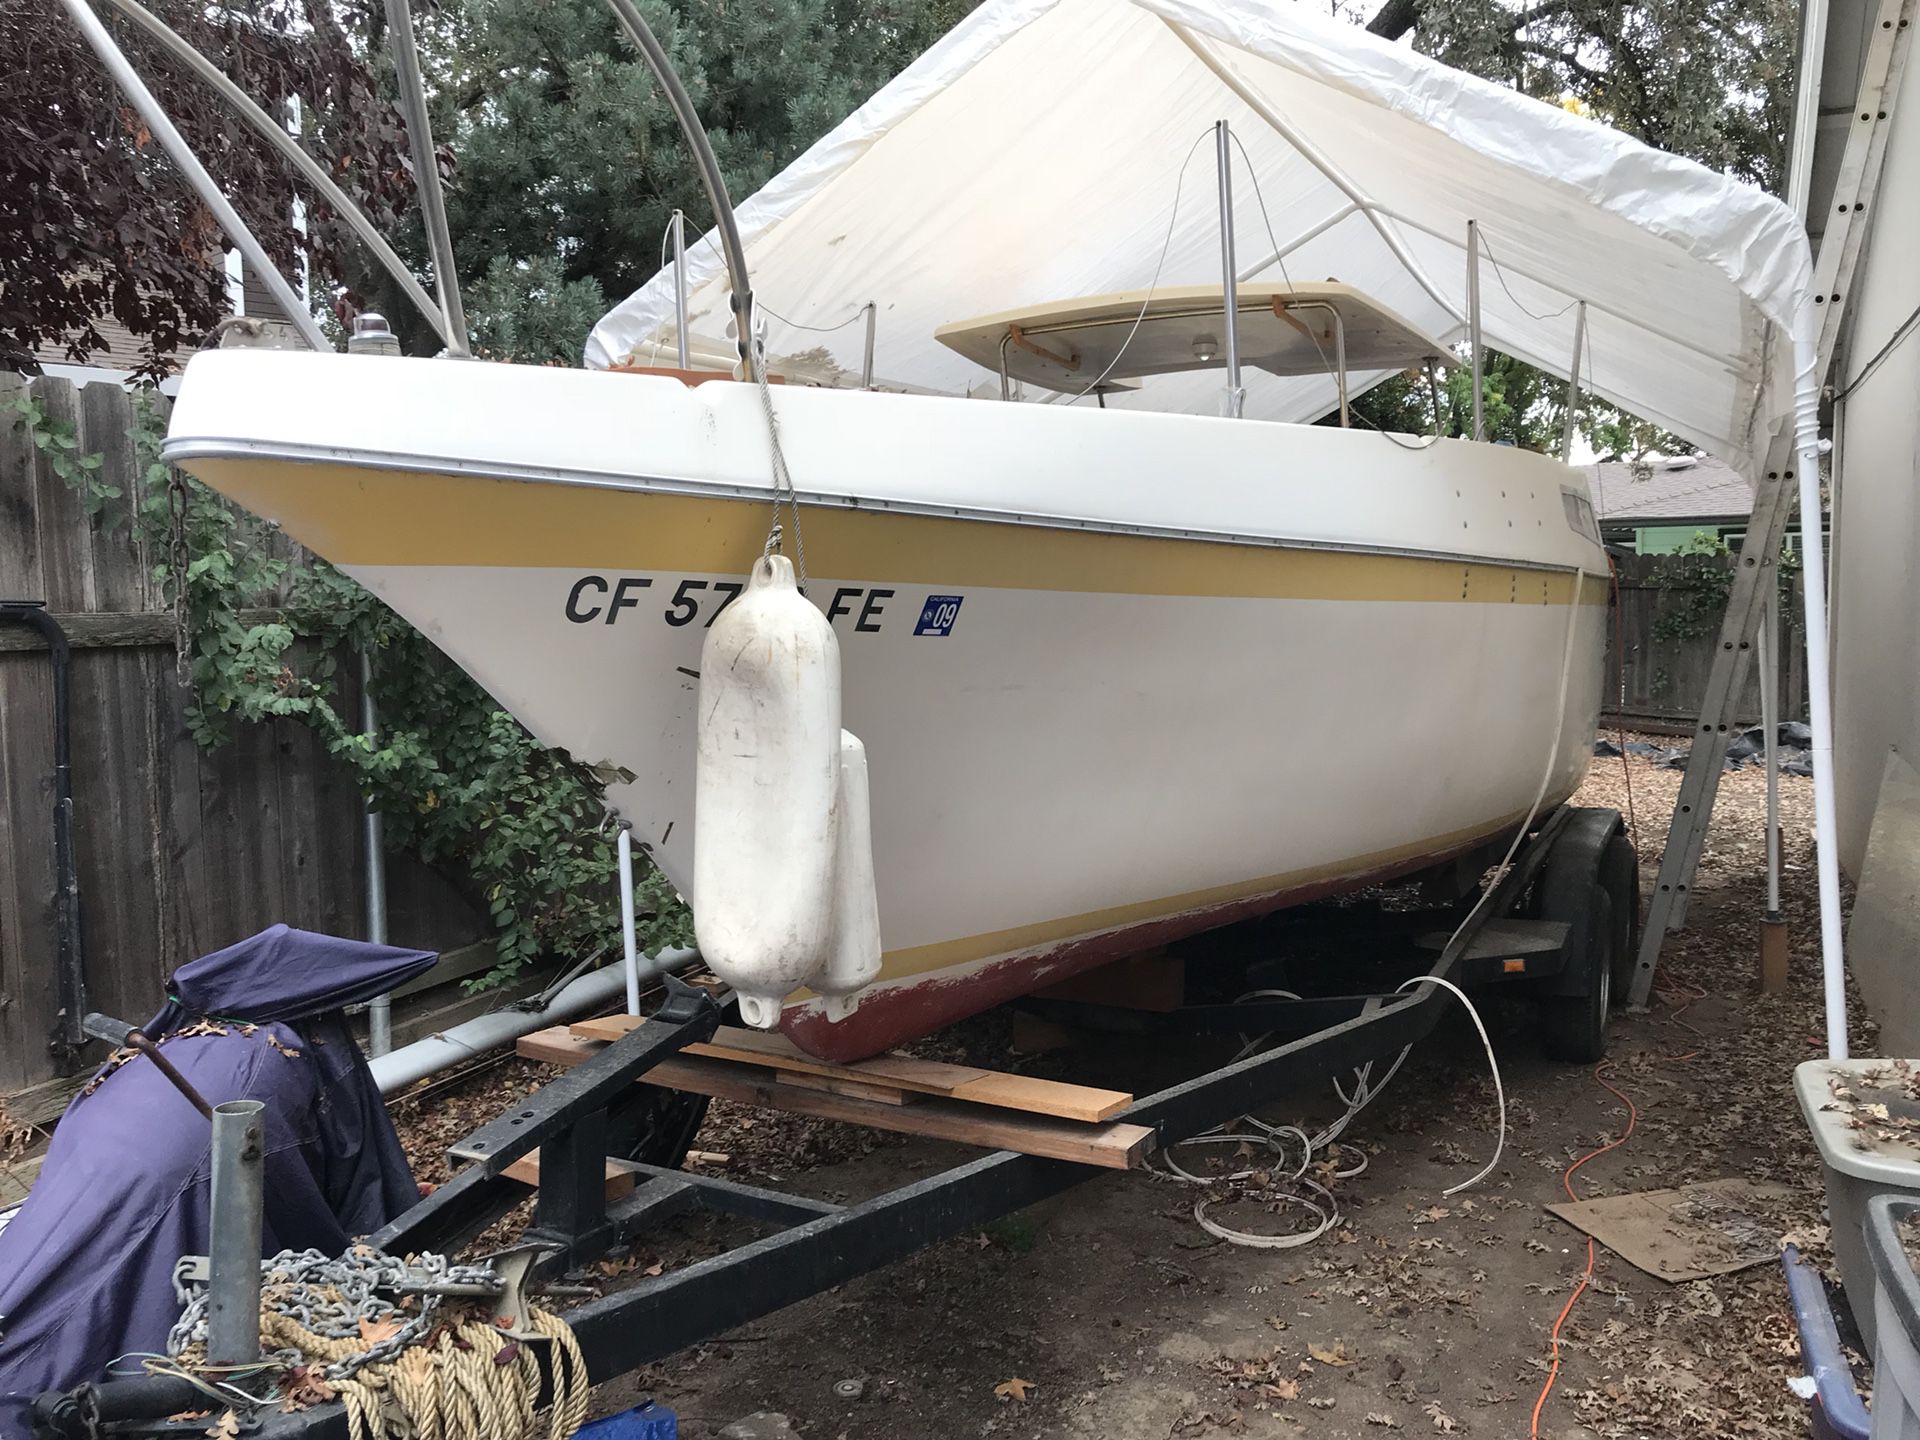 26’ clipper marine sailboat $1500 obo